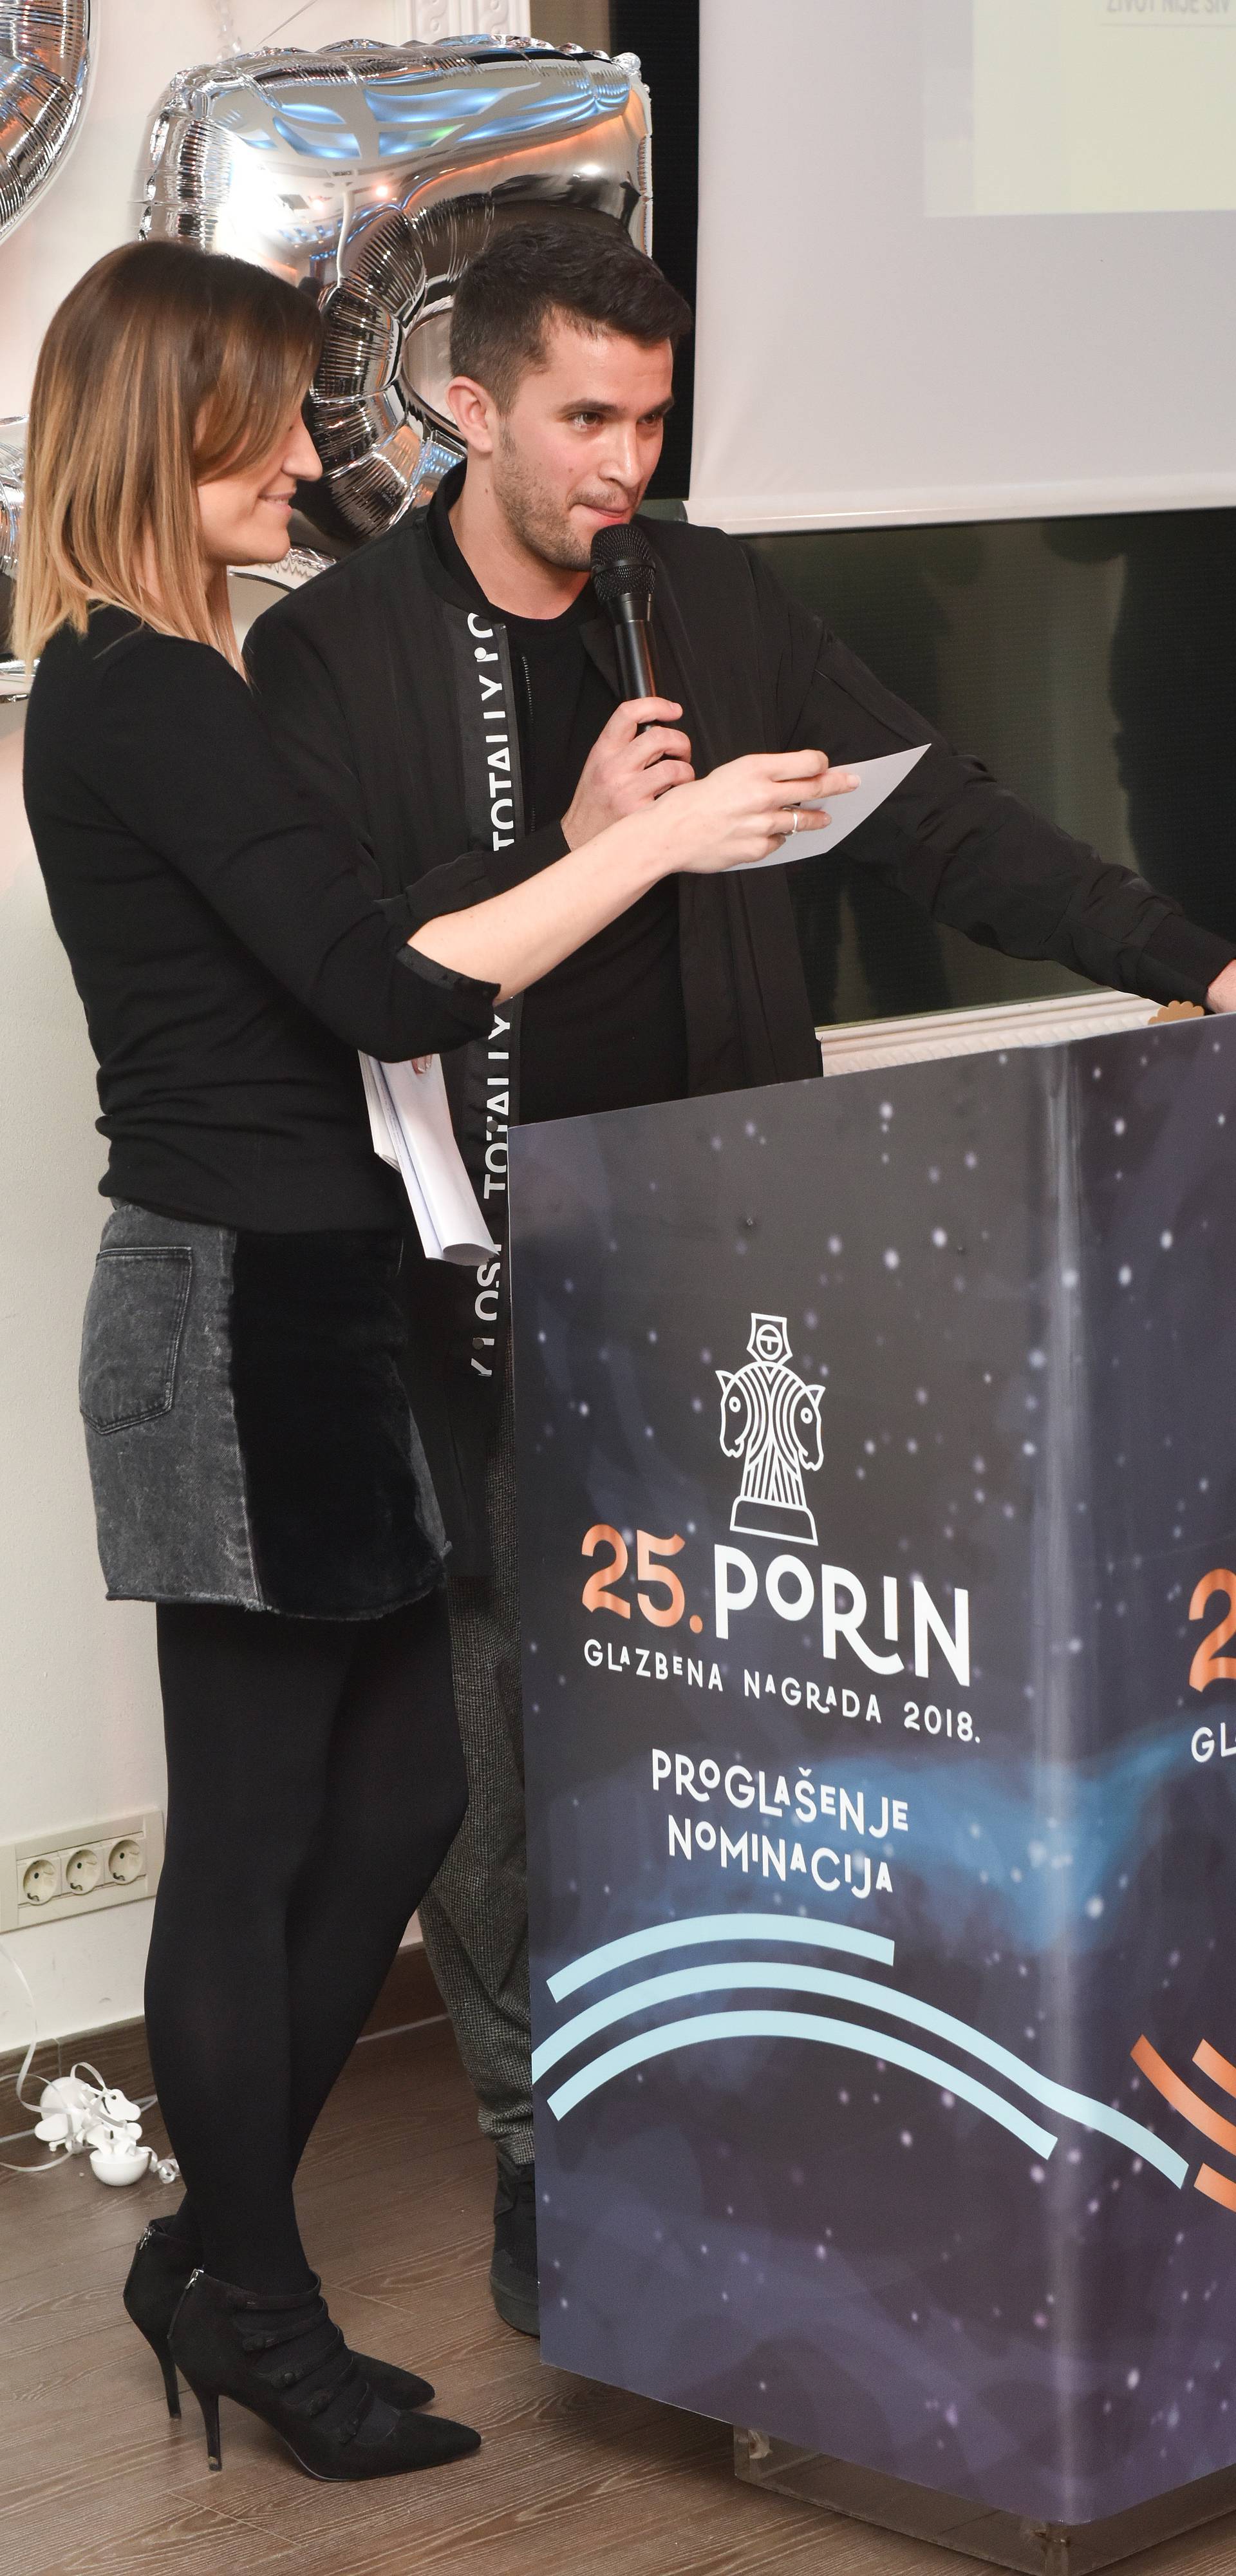 Mia Dimšić briljira na Porinu: Osvojila je devet nominacija